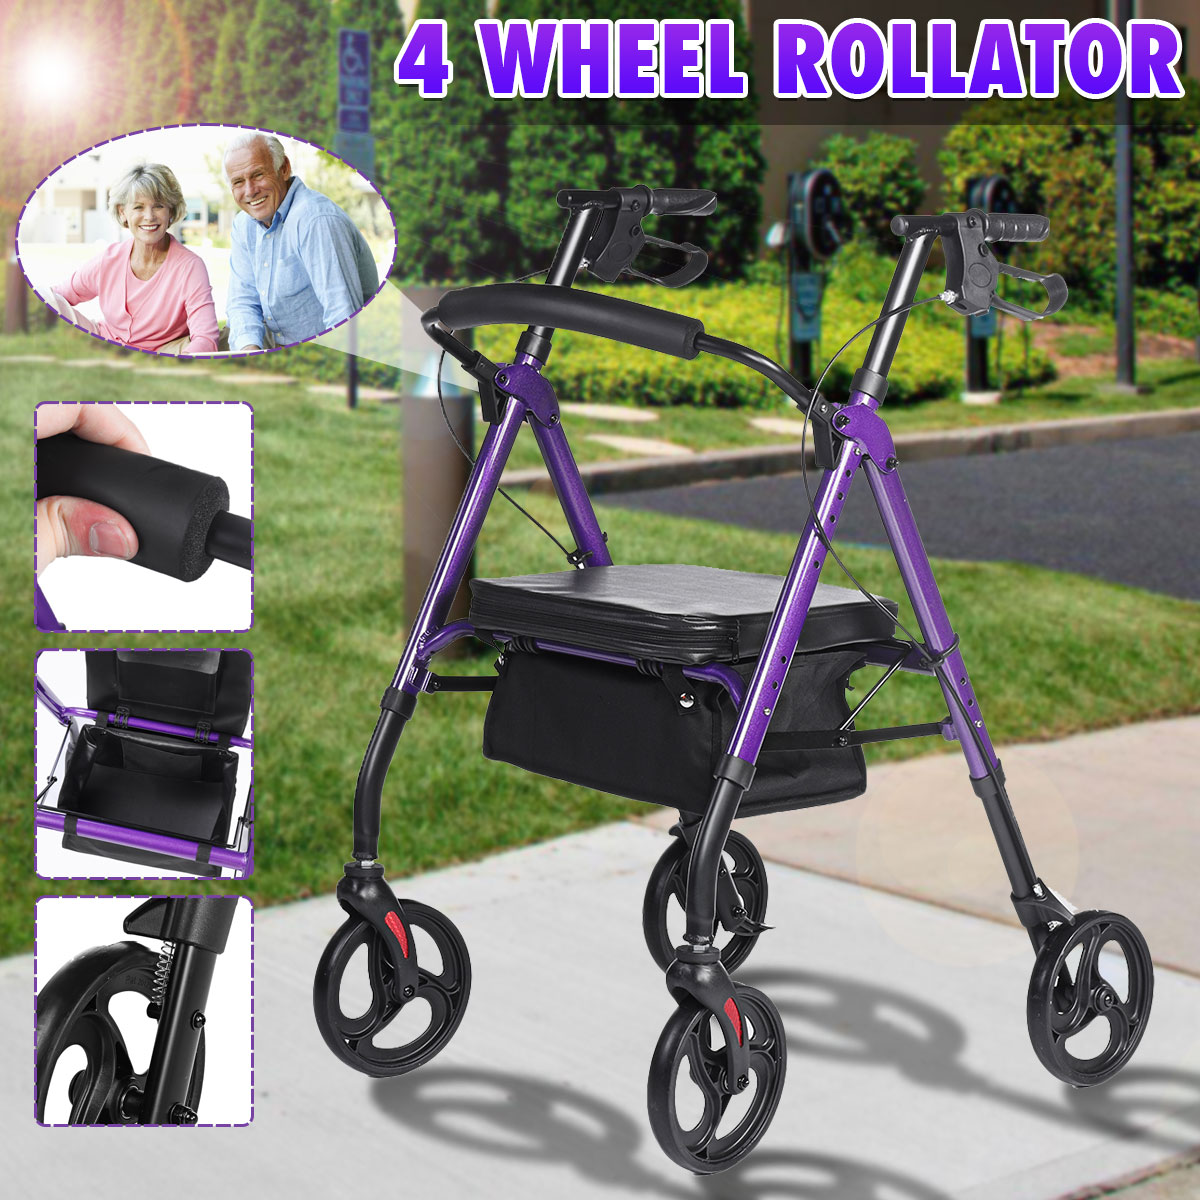 4-Wheel-Seat-Rolling-Walker-Chair-Rollator-Foldable-Adjustable-Elderly-Aid-Basket-Backrest-1940430-1